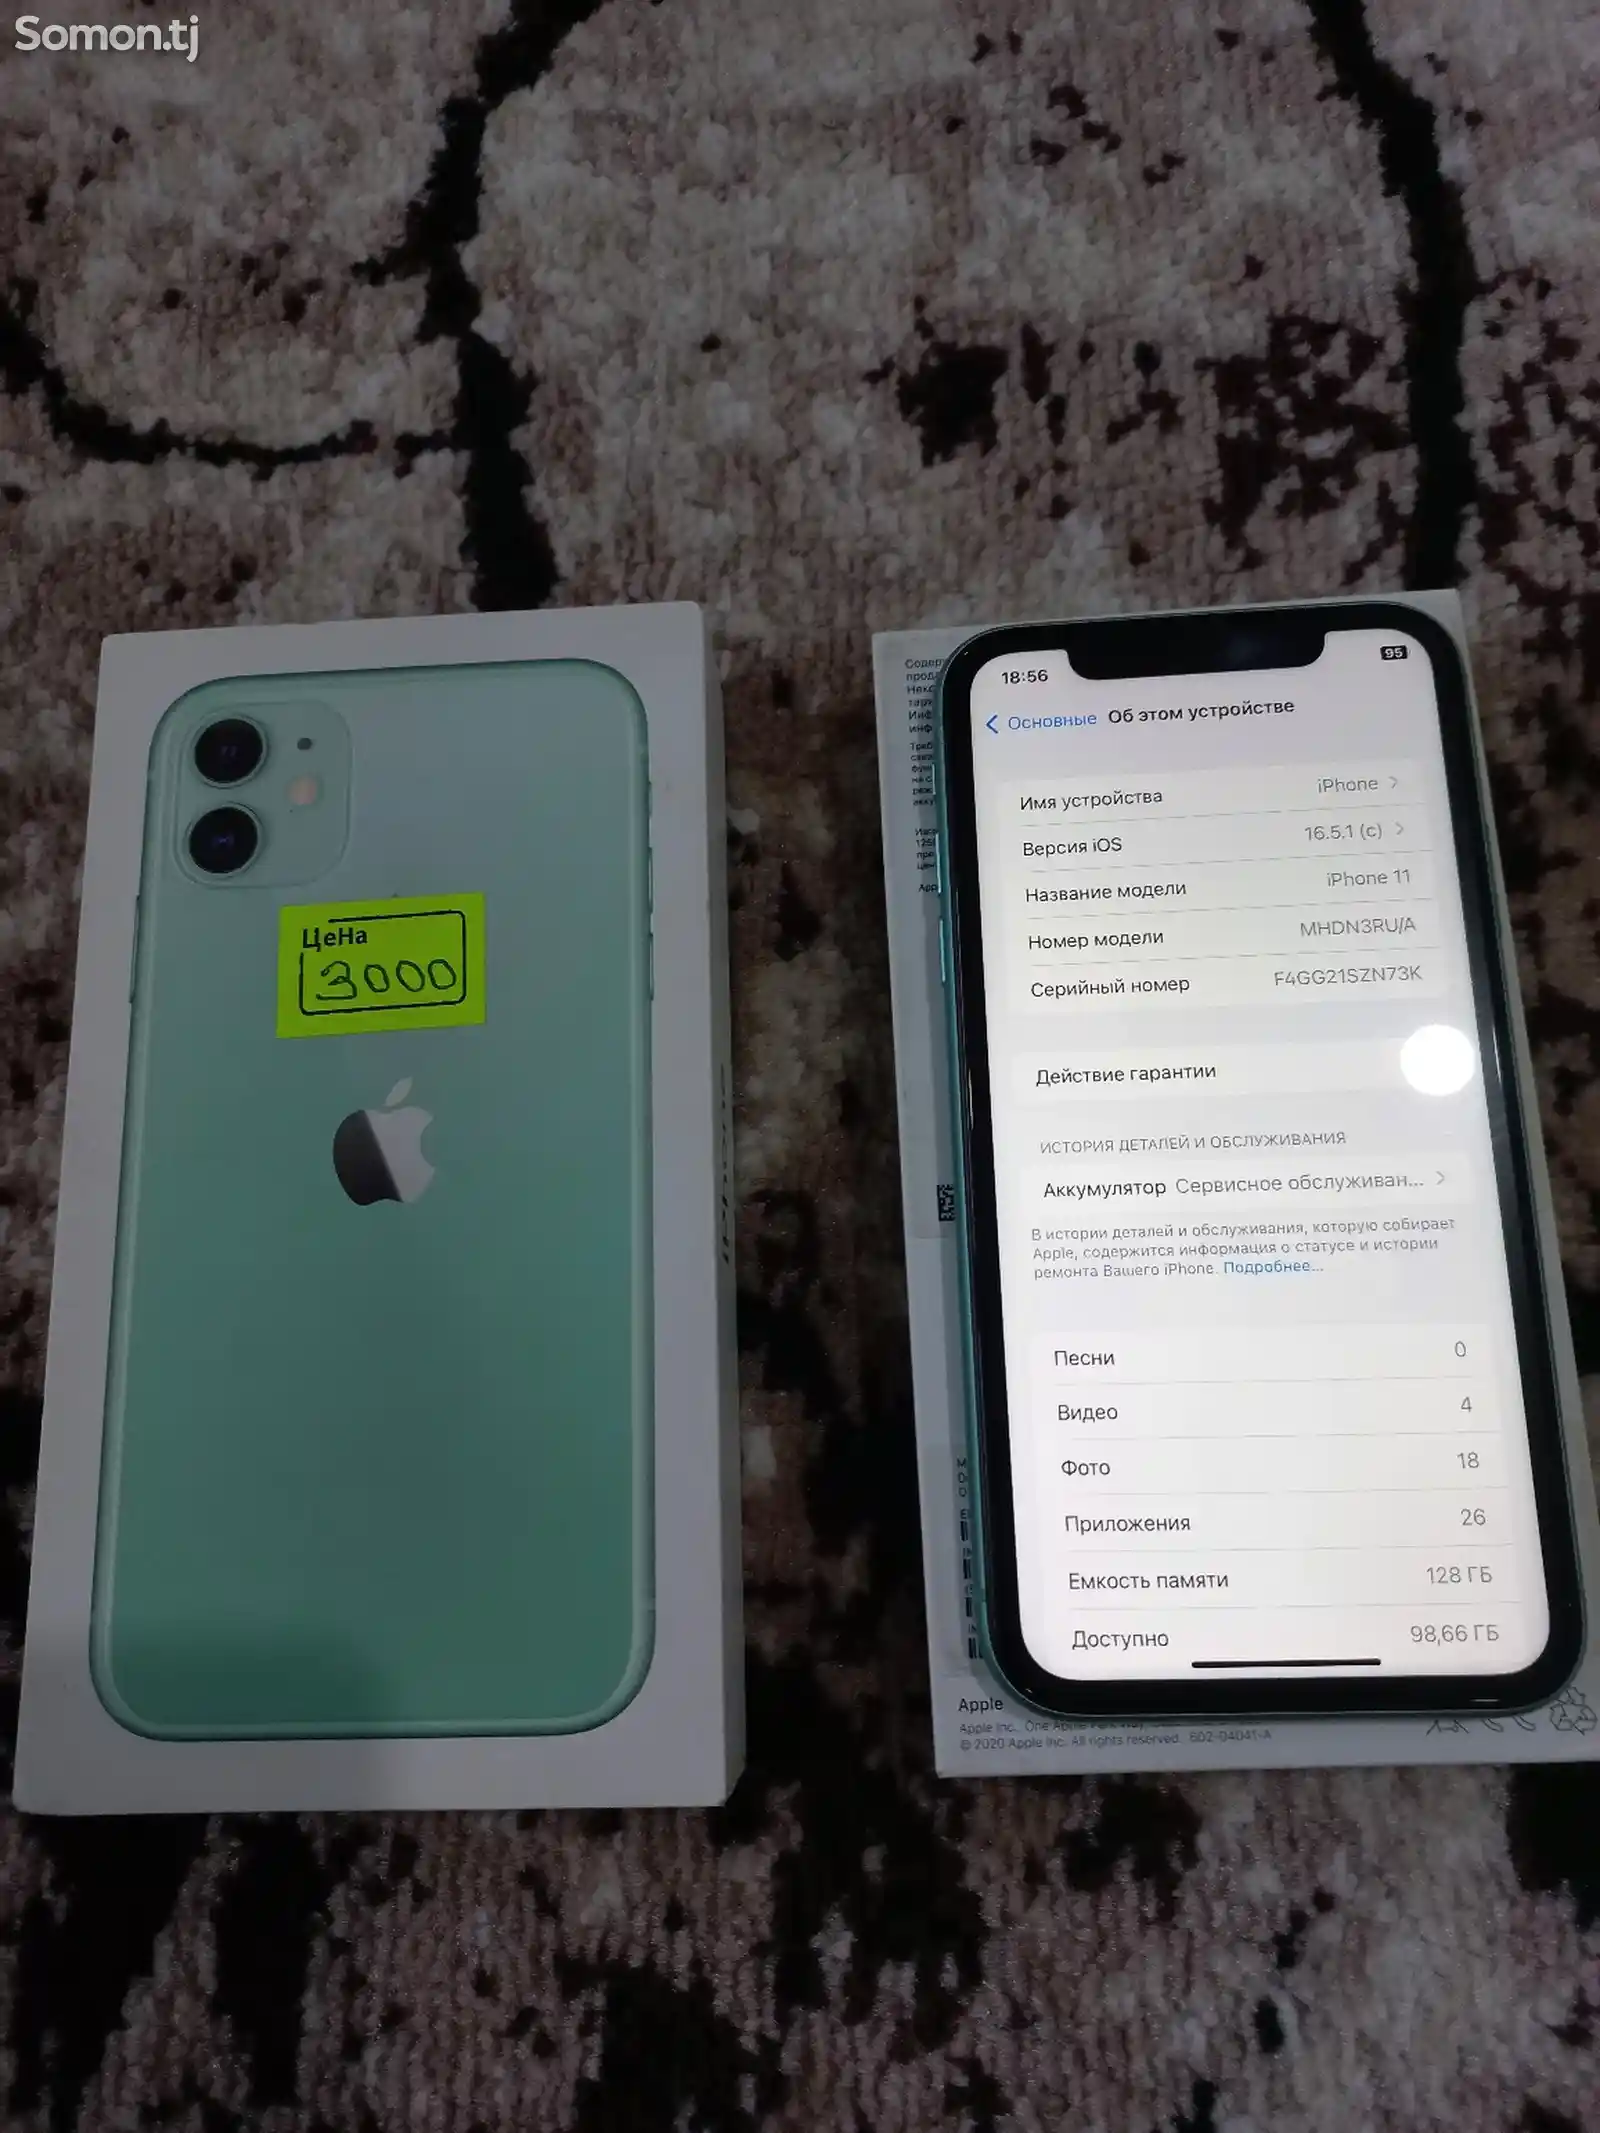 Apple iPhone 11, 128 gb, Green-1